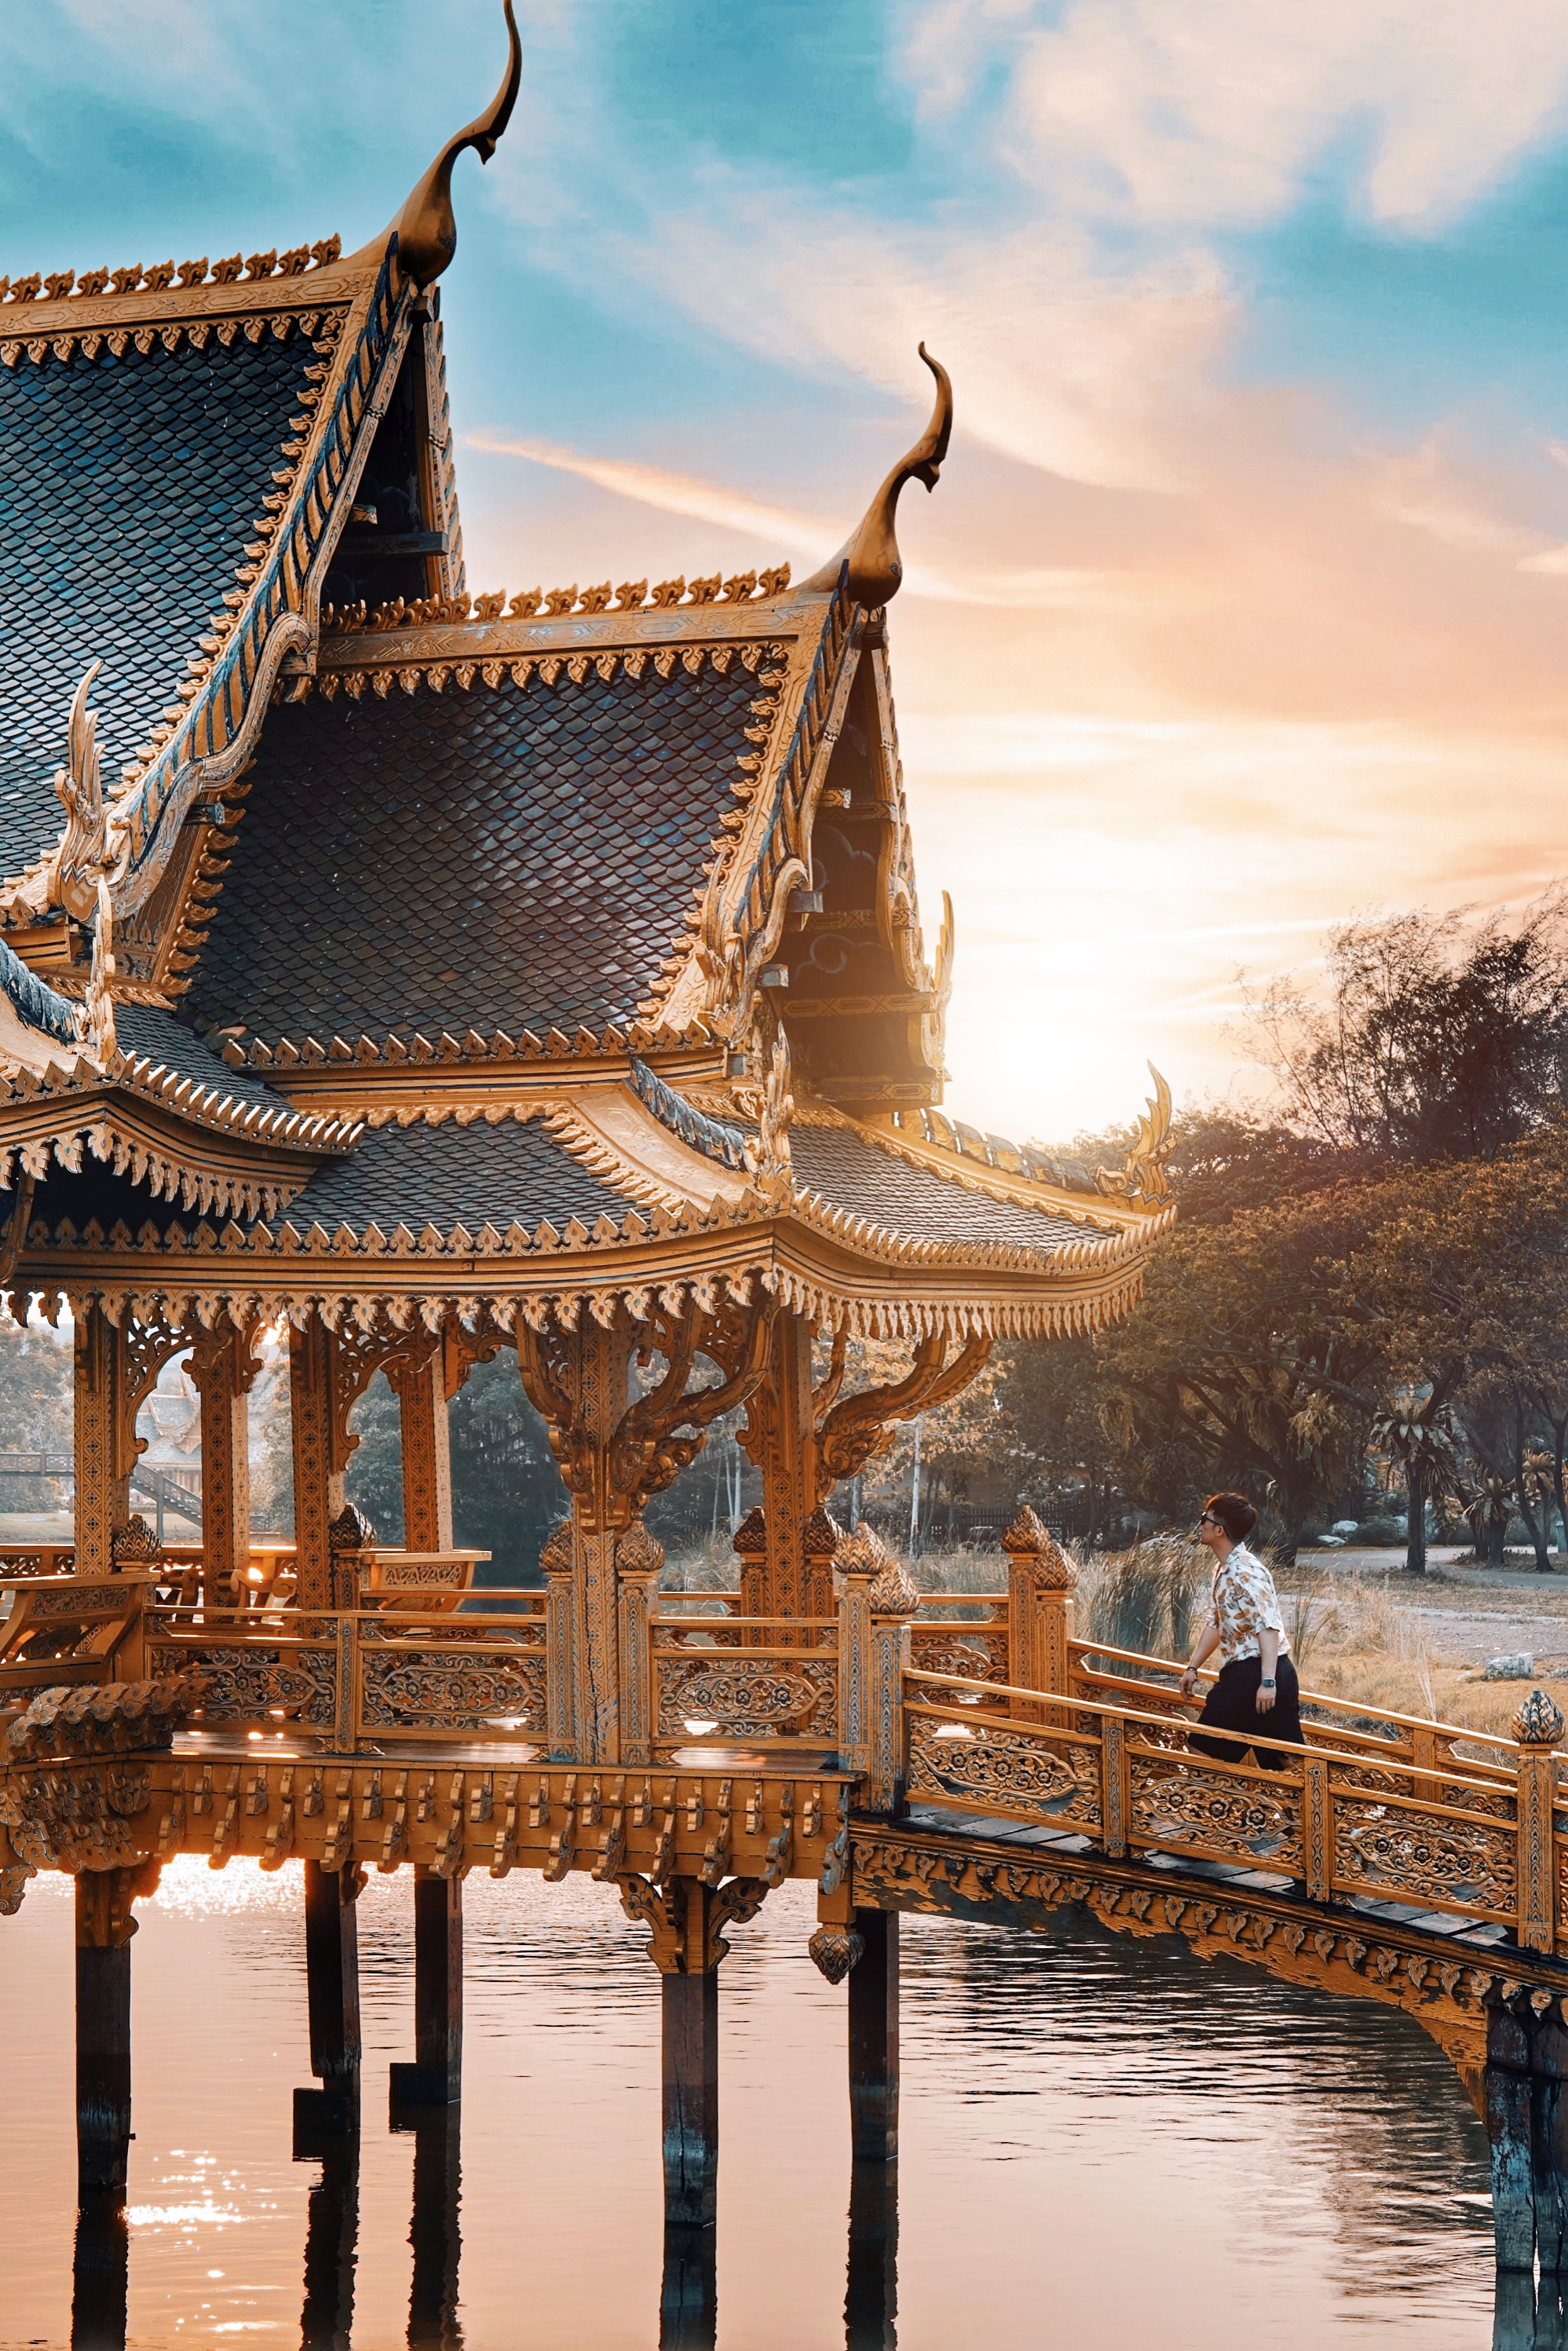 【泰国】曼谷周边小众打开地暹罗古城